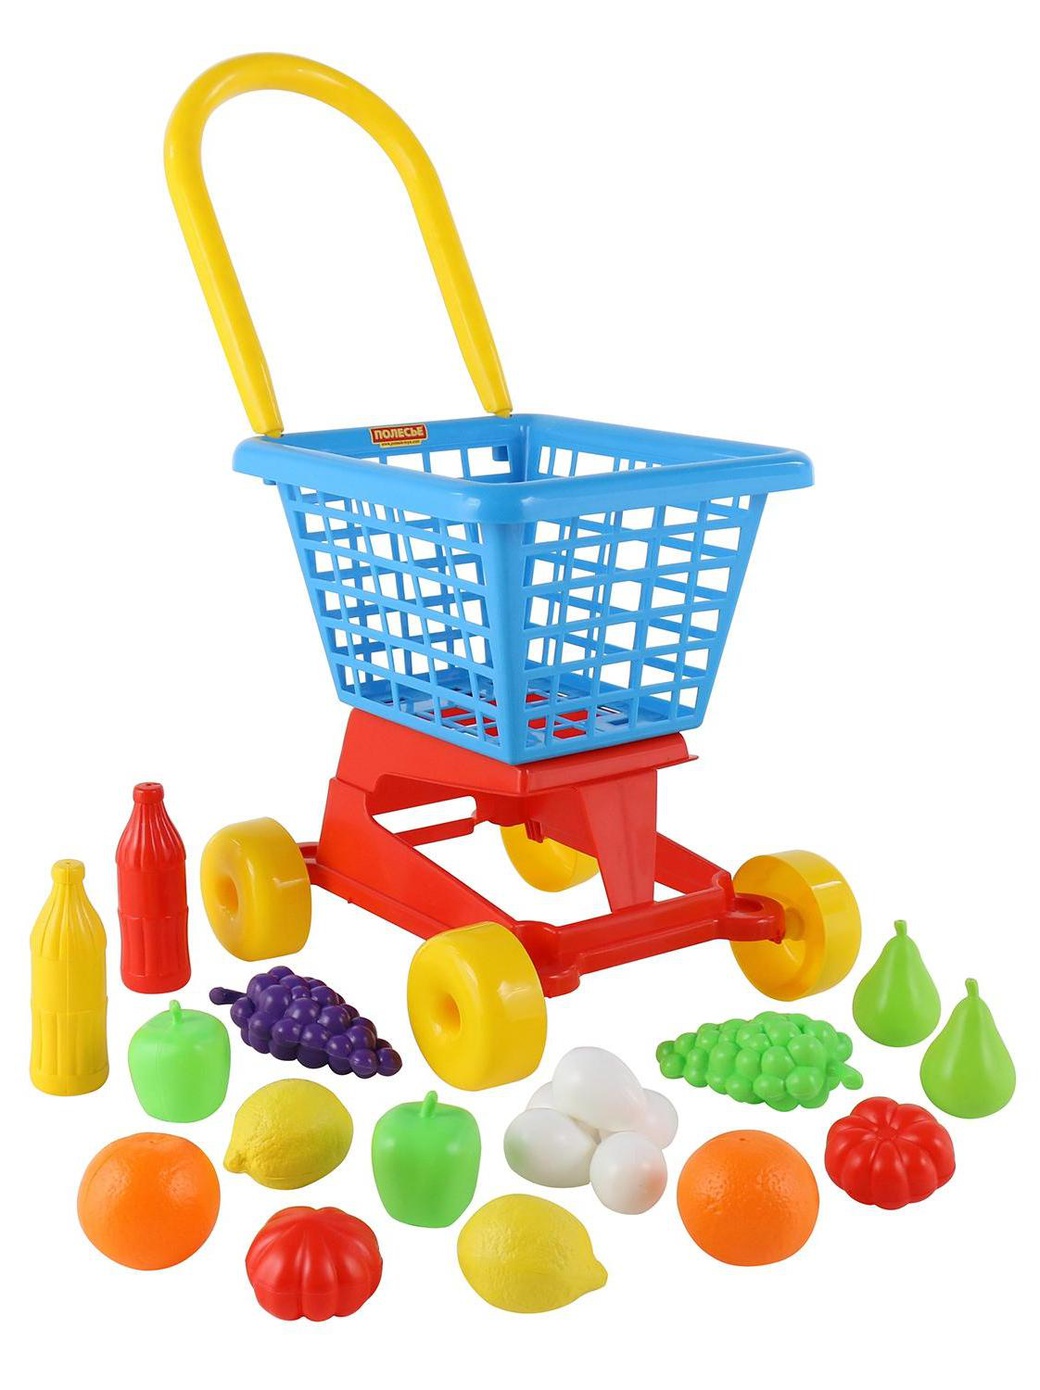 Тележка Palau Toys "Supermarket" №1 + набор продуктов (в сеточке) фото